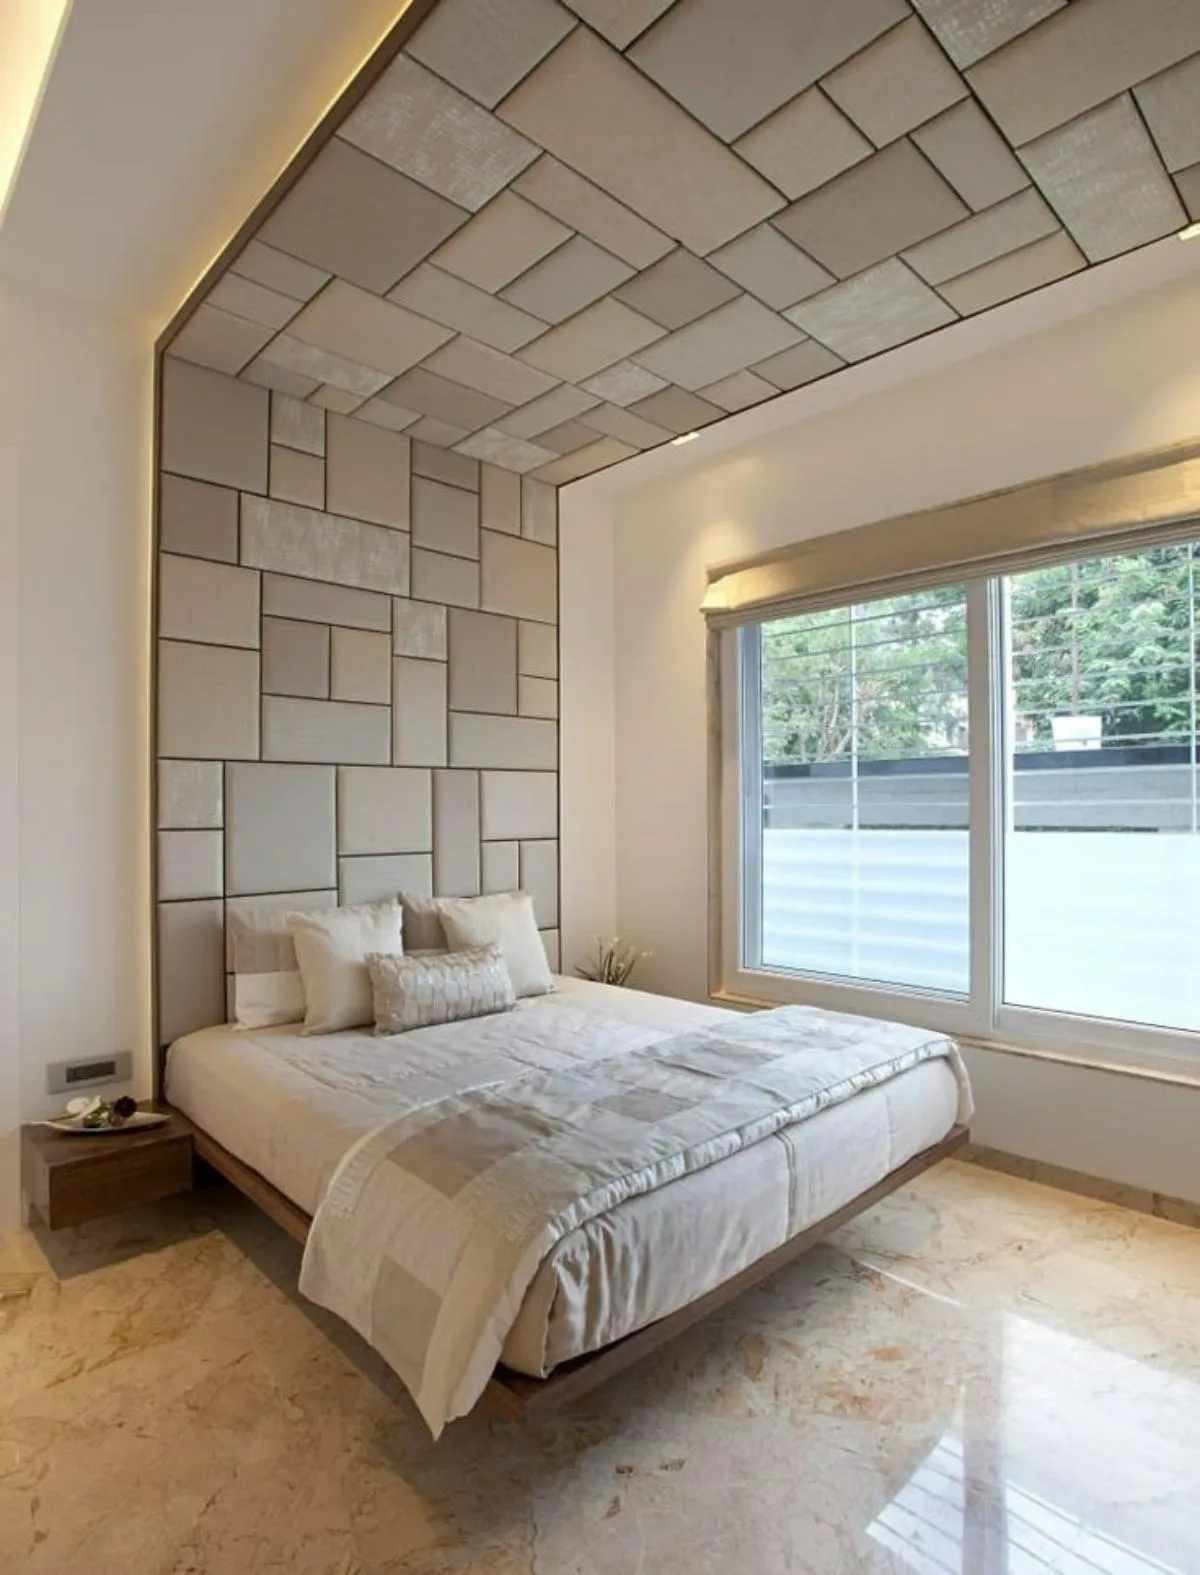 سقف‌کاذب کرمی رنگ با طراحی چهارخانه‌های درشت و برجسته متصل به دیوار